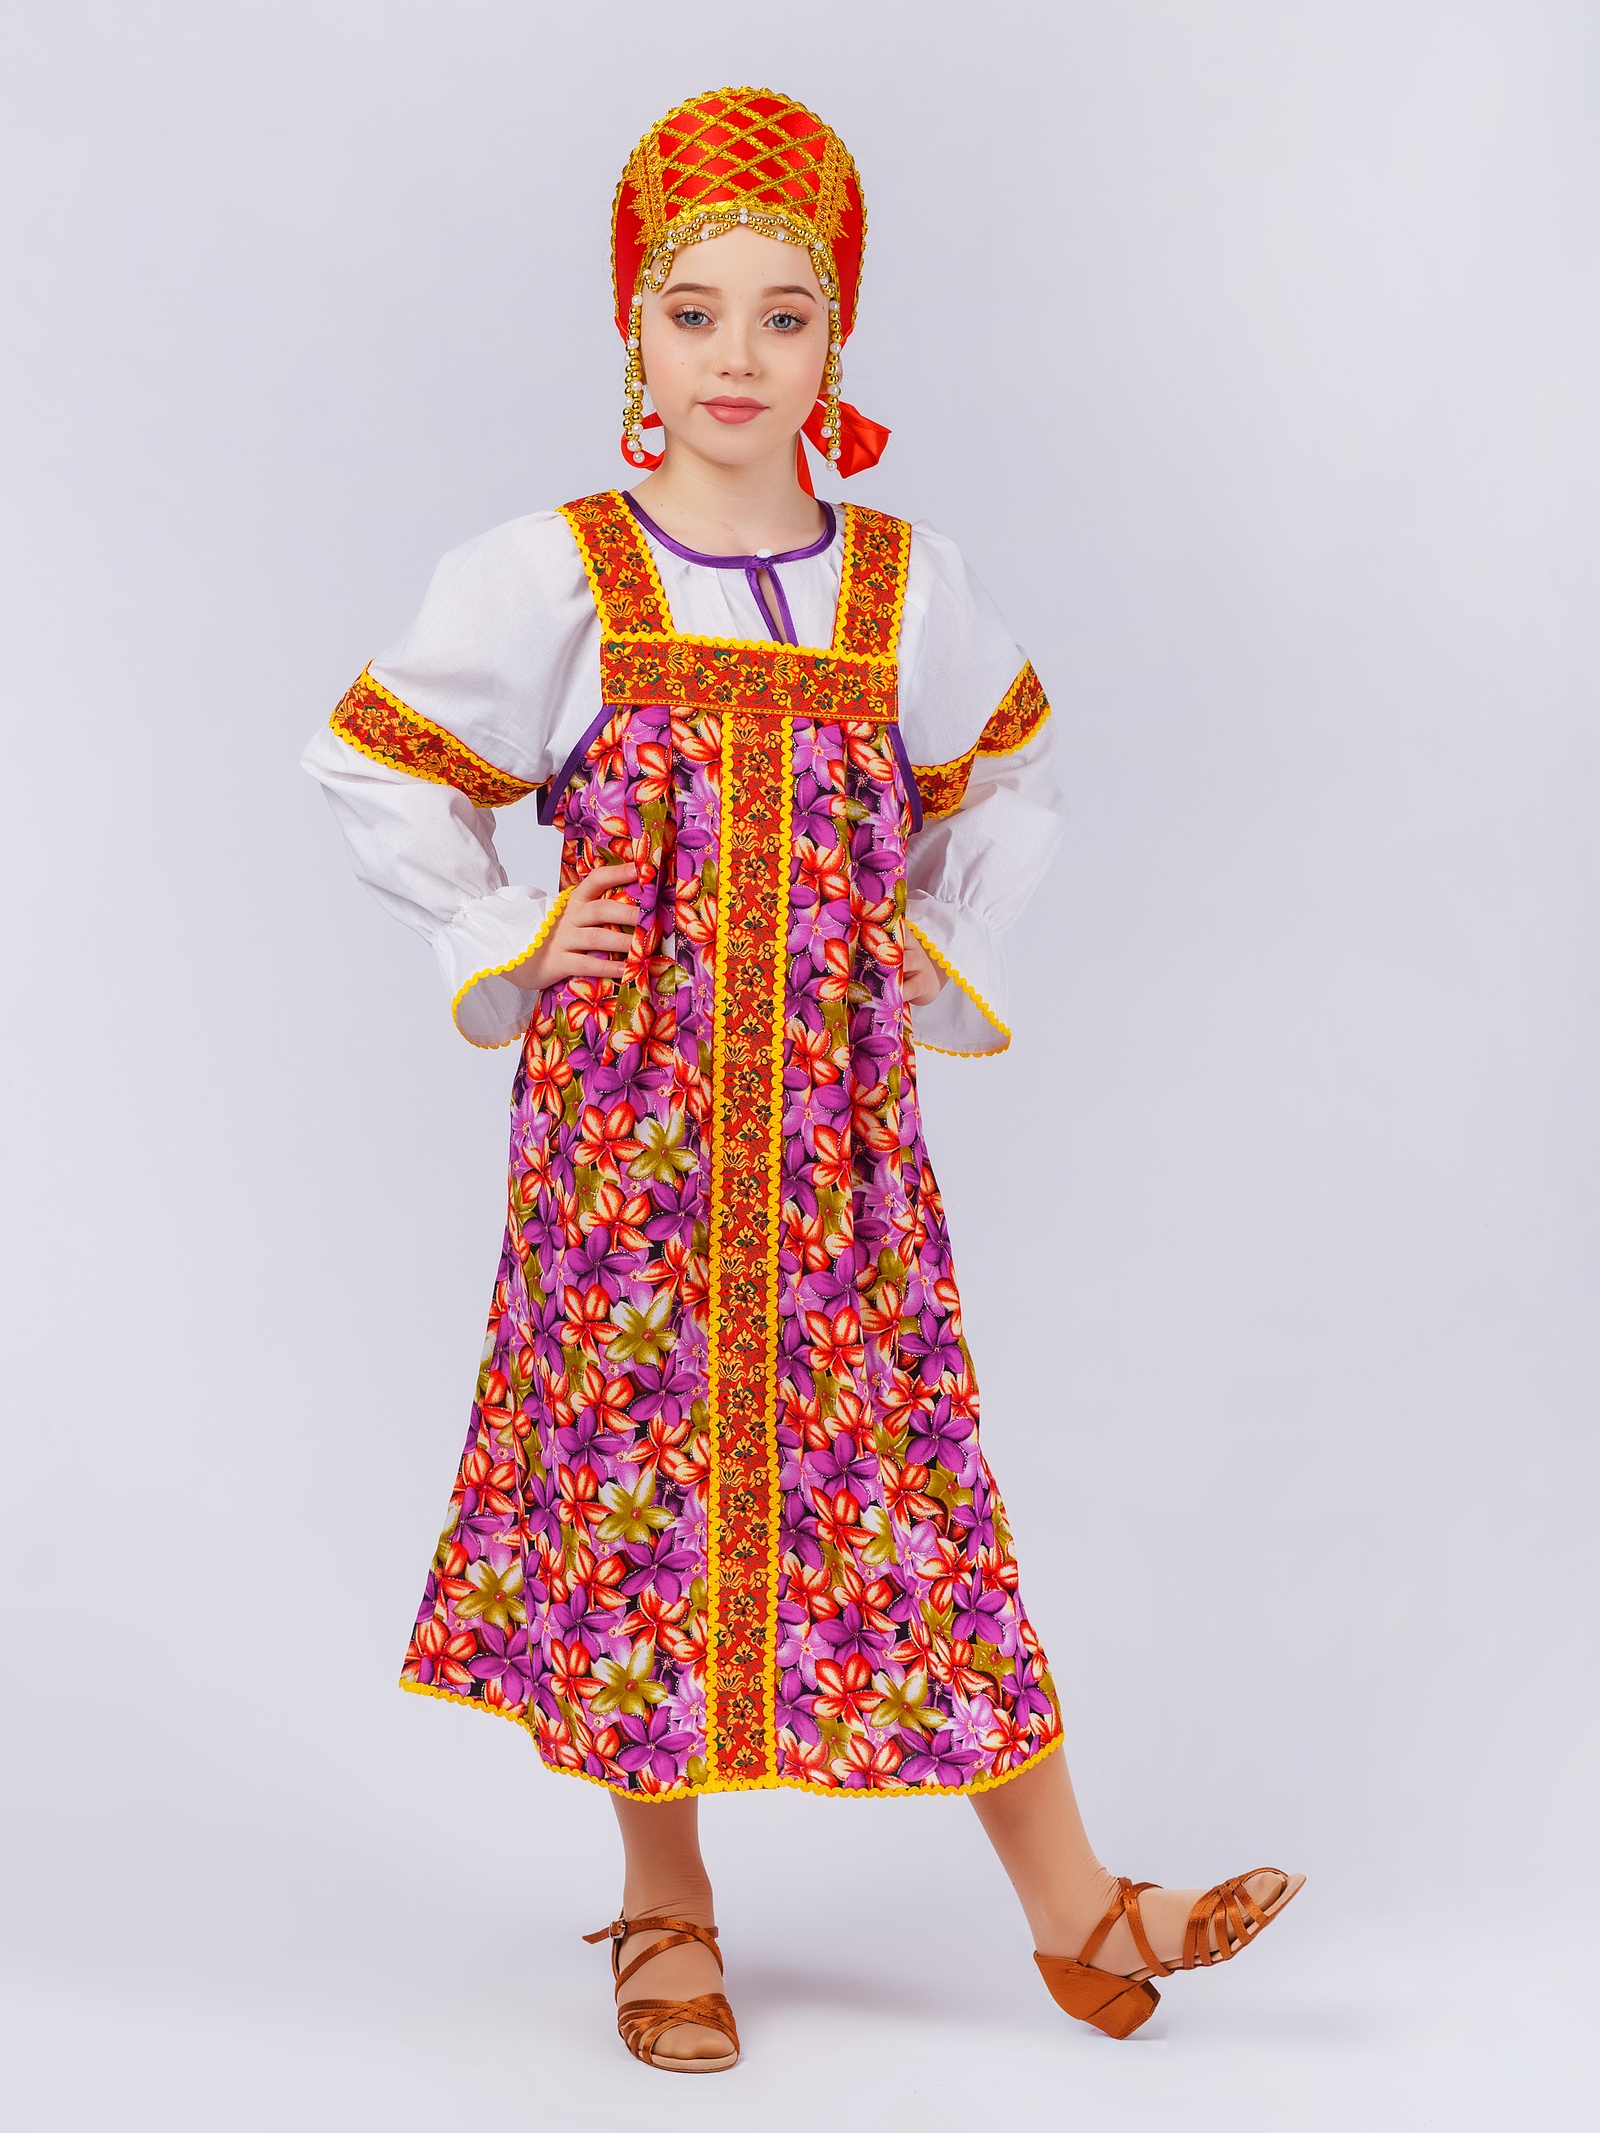 Карнавальный костюм Gala-Вальс сарафан цветной, сиреневый, белый